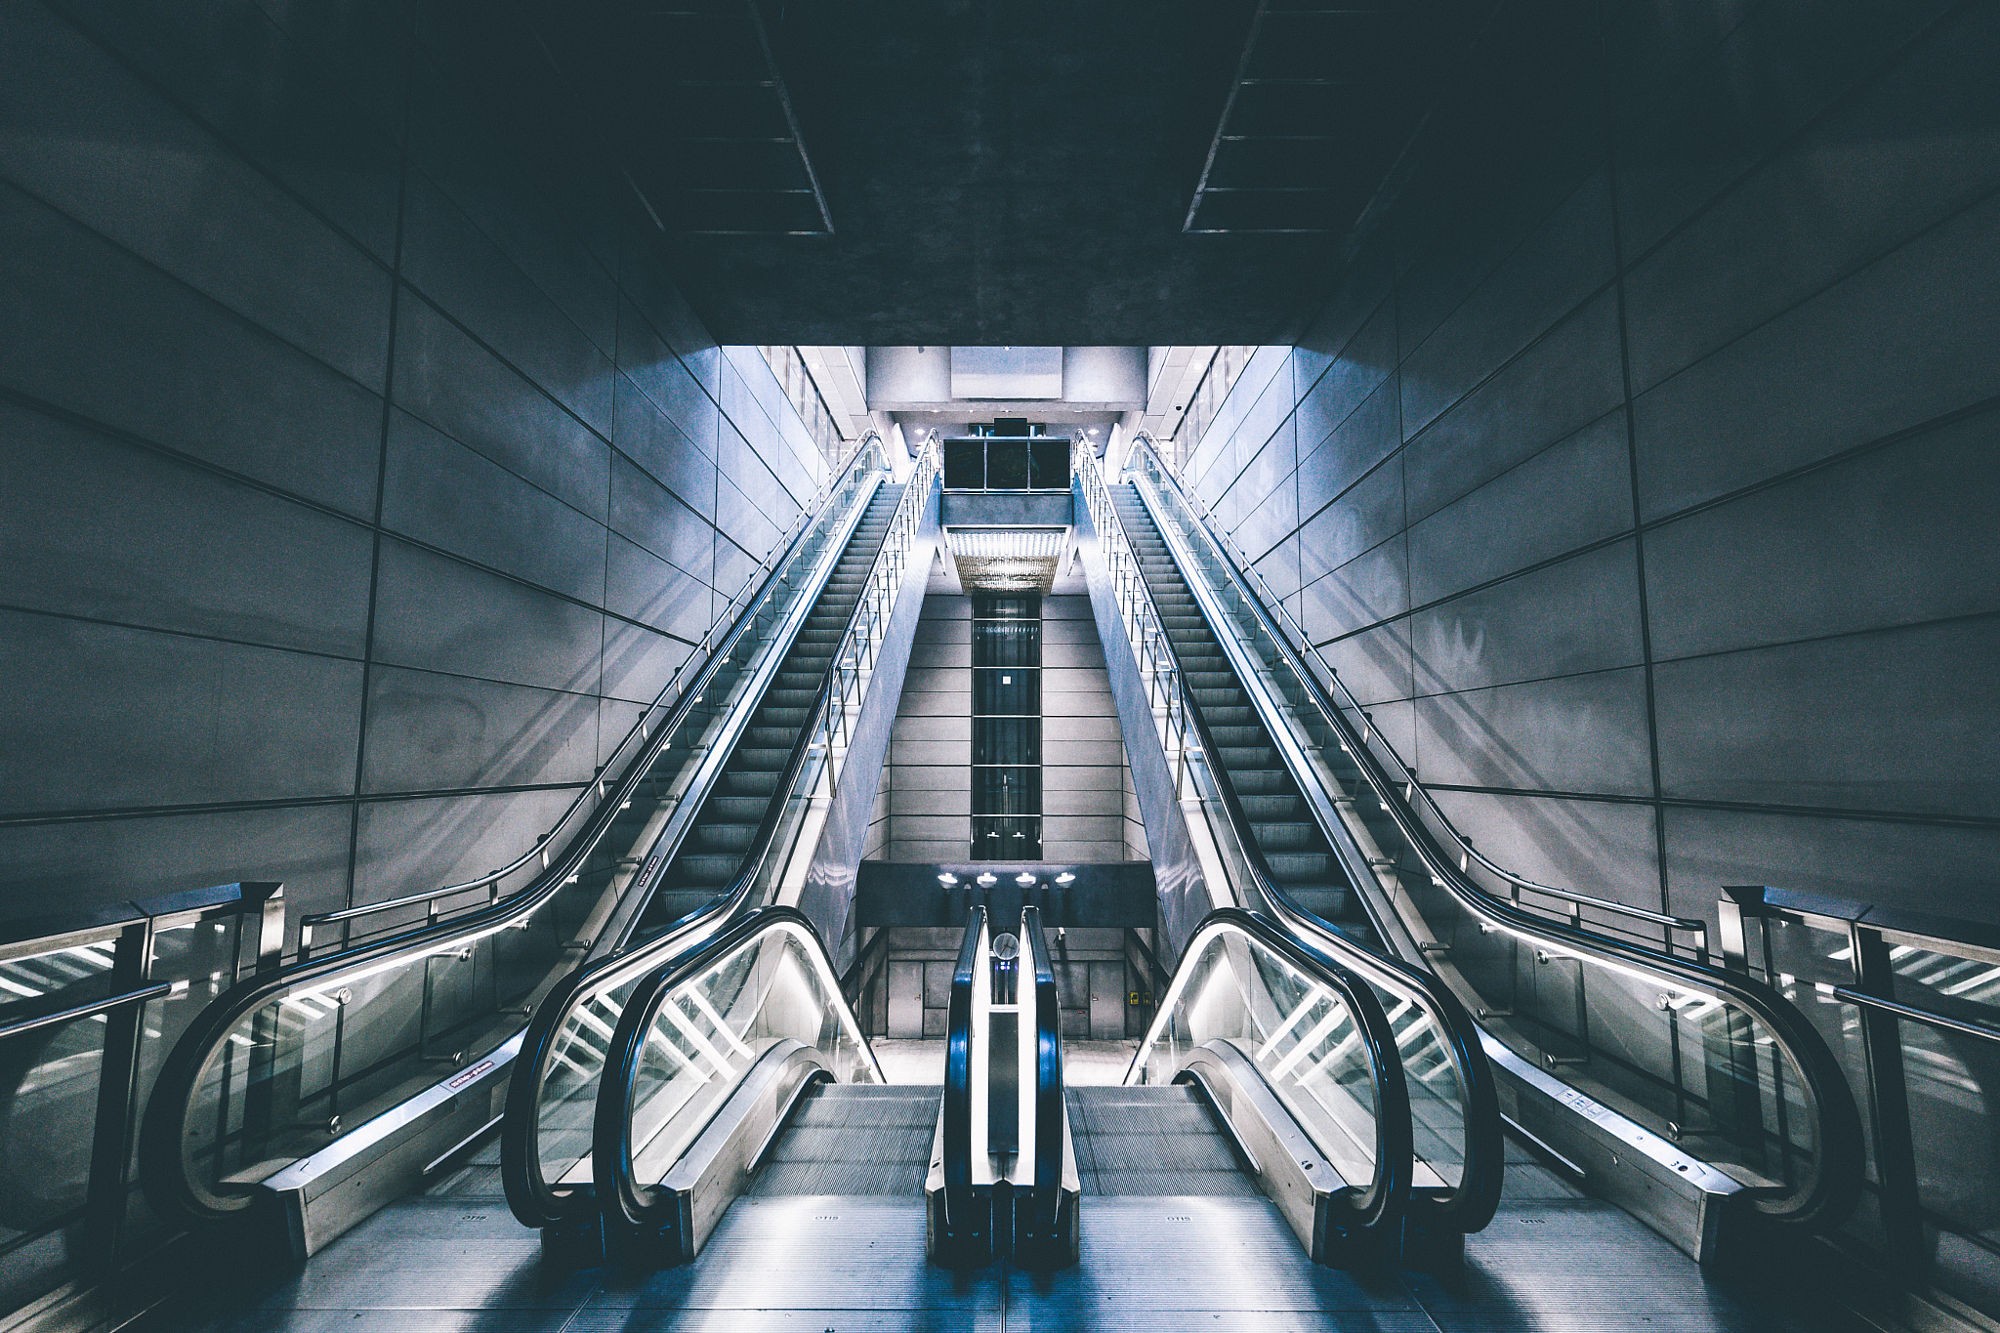 General 2000x1333 escalator subway underground